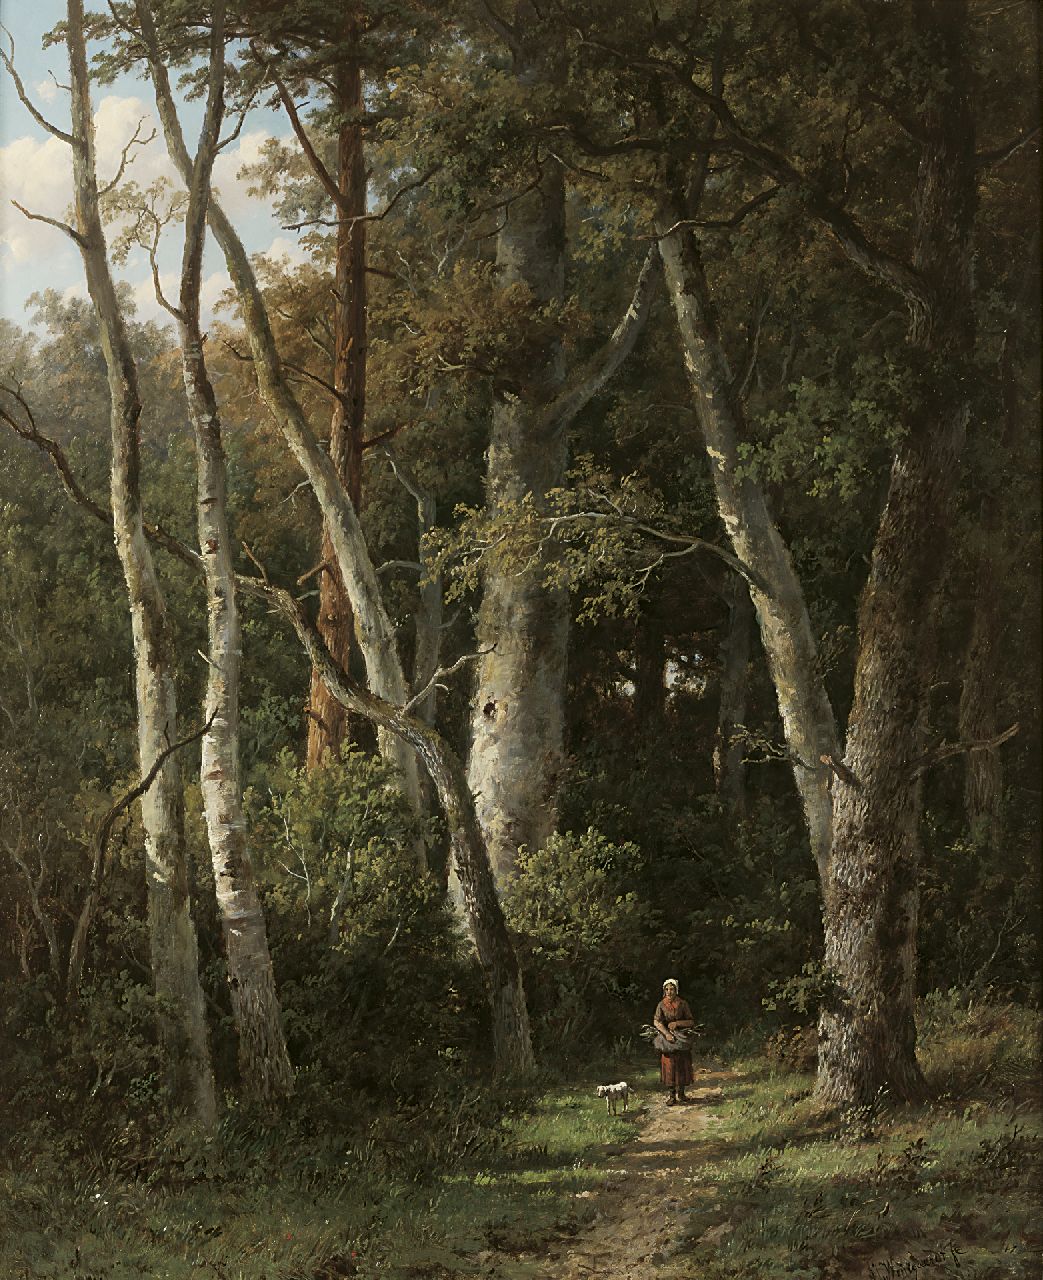 Wijngaerdt A.J. van | Anthonie Jacobus van Wijngaerdt, Houtsprokkelaarster op een bospad, olieverf op paneel 66,2 x 54,0 cm, gesigneerd rechtsonder